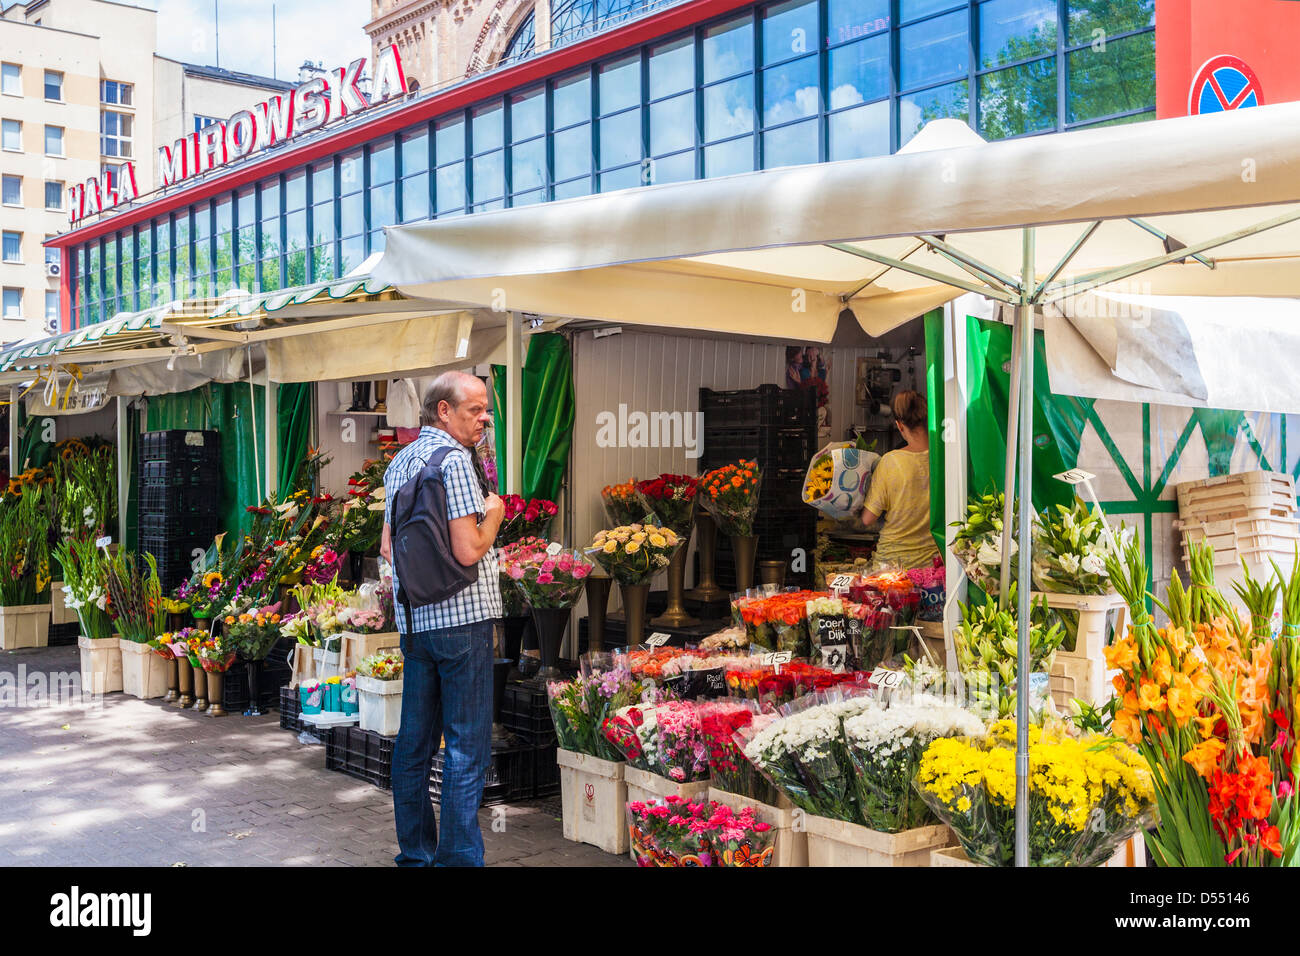 Blume Stände außerhalb Hala Mirowska Markt in Warschau, Polen. Stockfoto